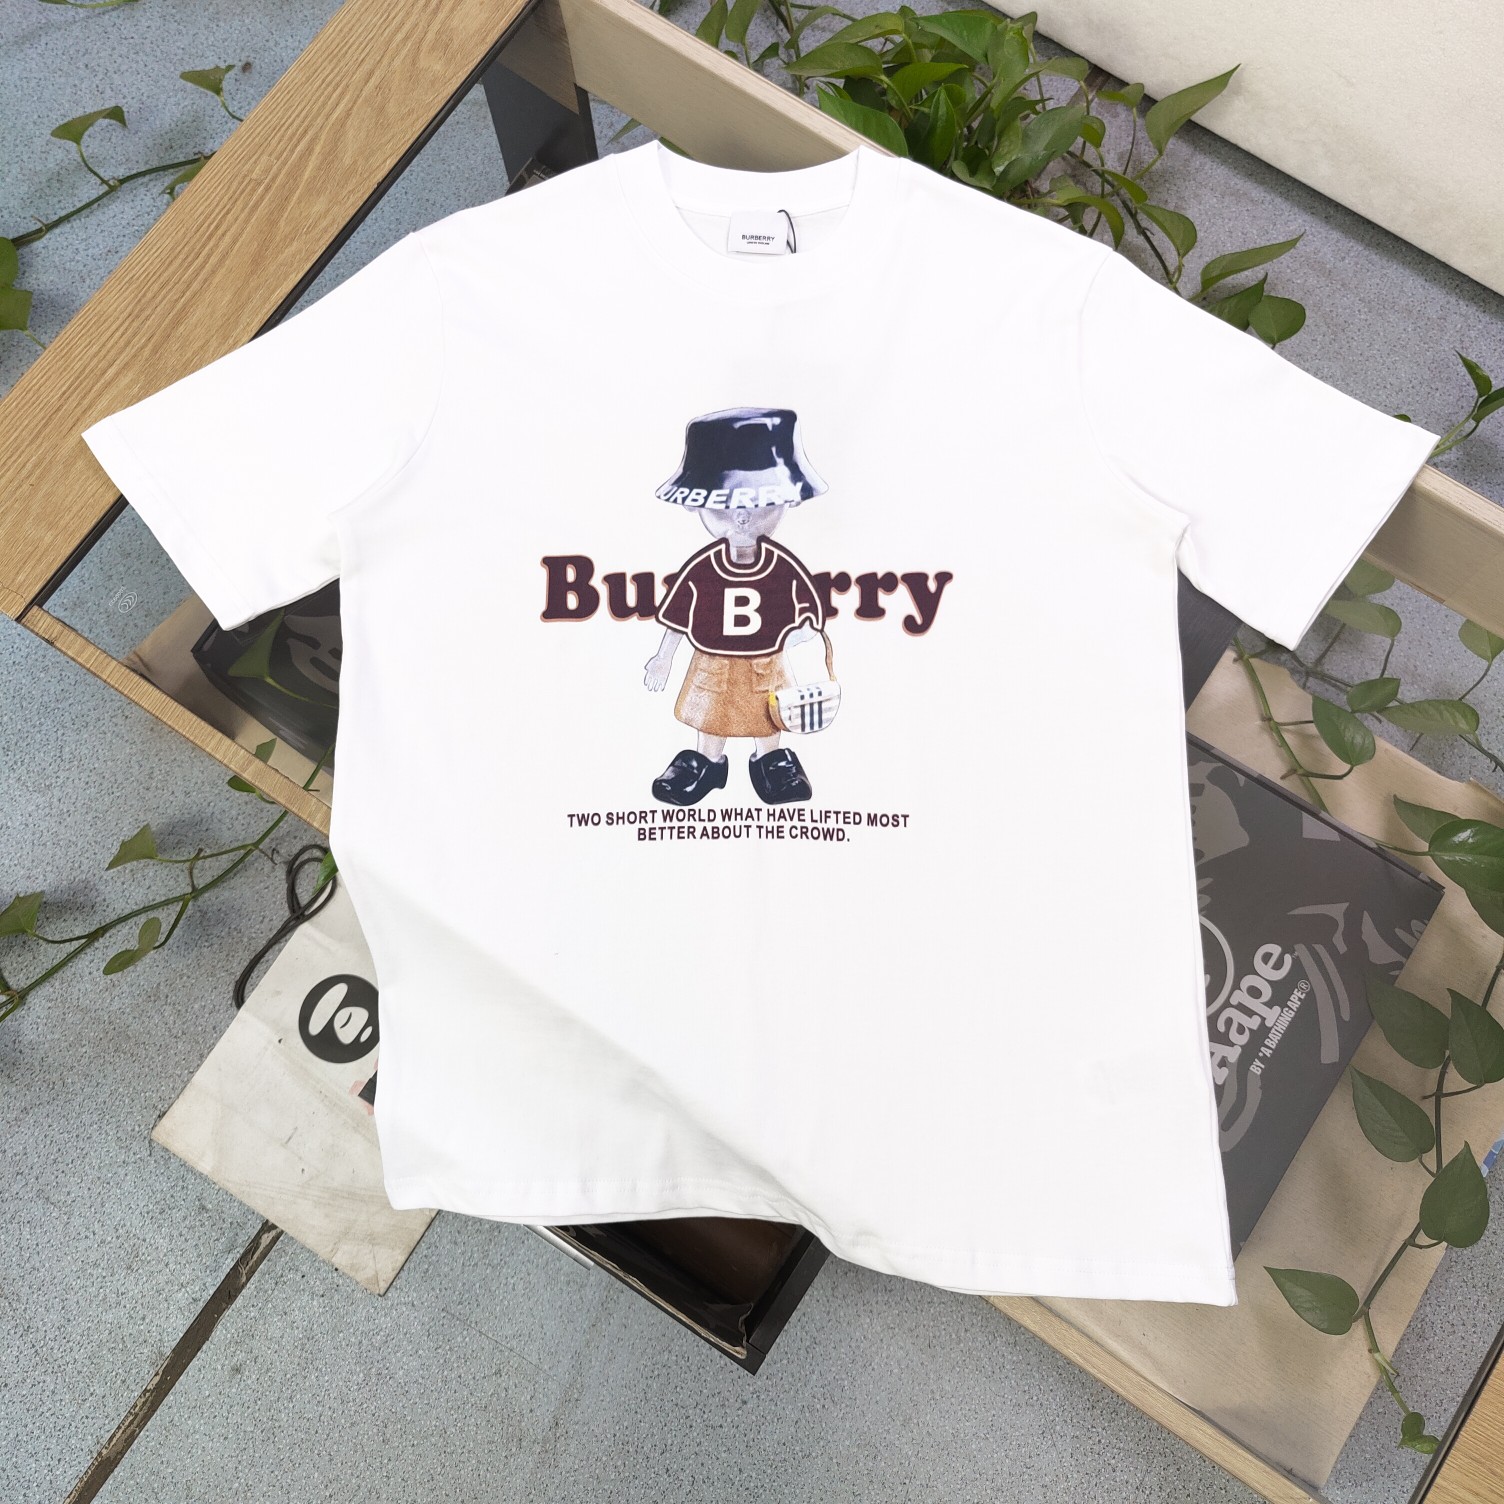 Burberry Kleidung T-Shirt Schwarz Weiß Drucken Unisex Baumwolle Kurzarm